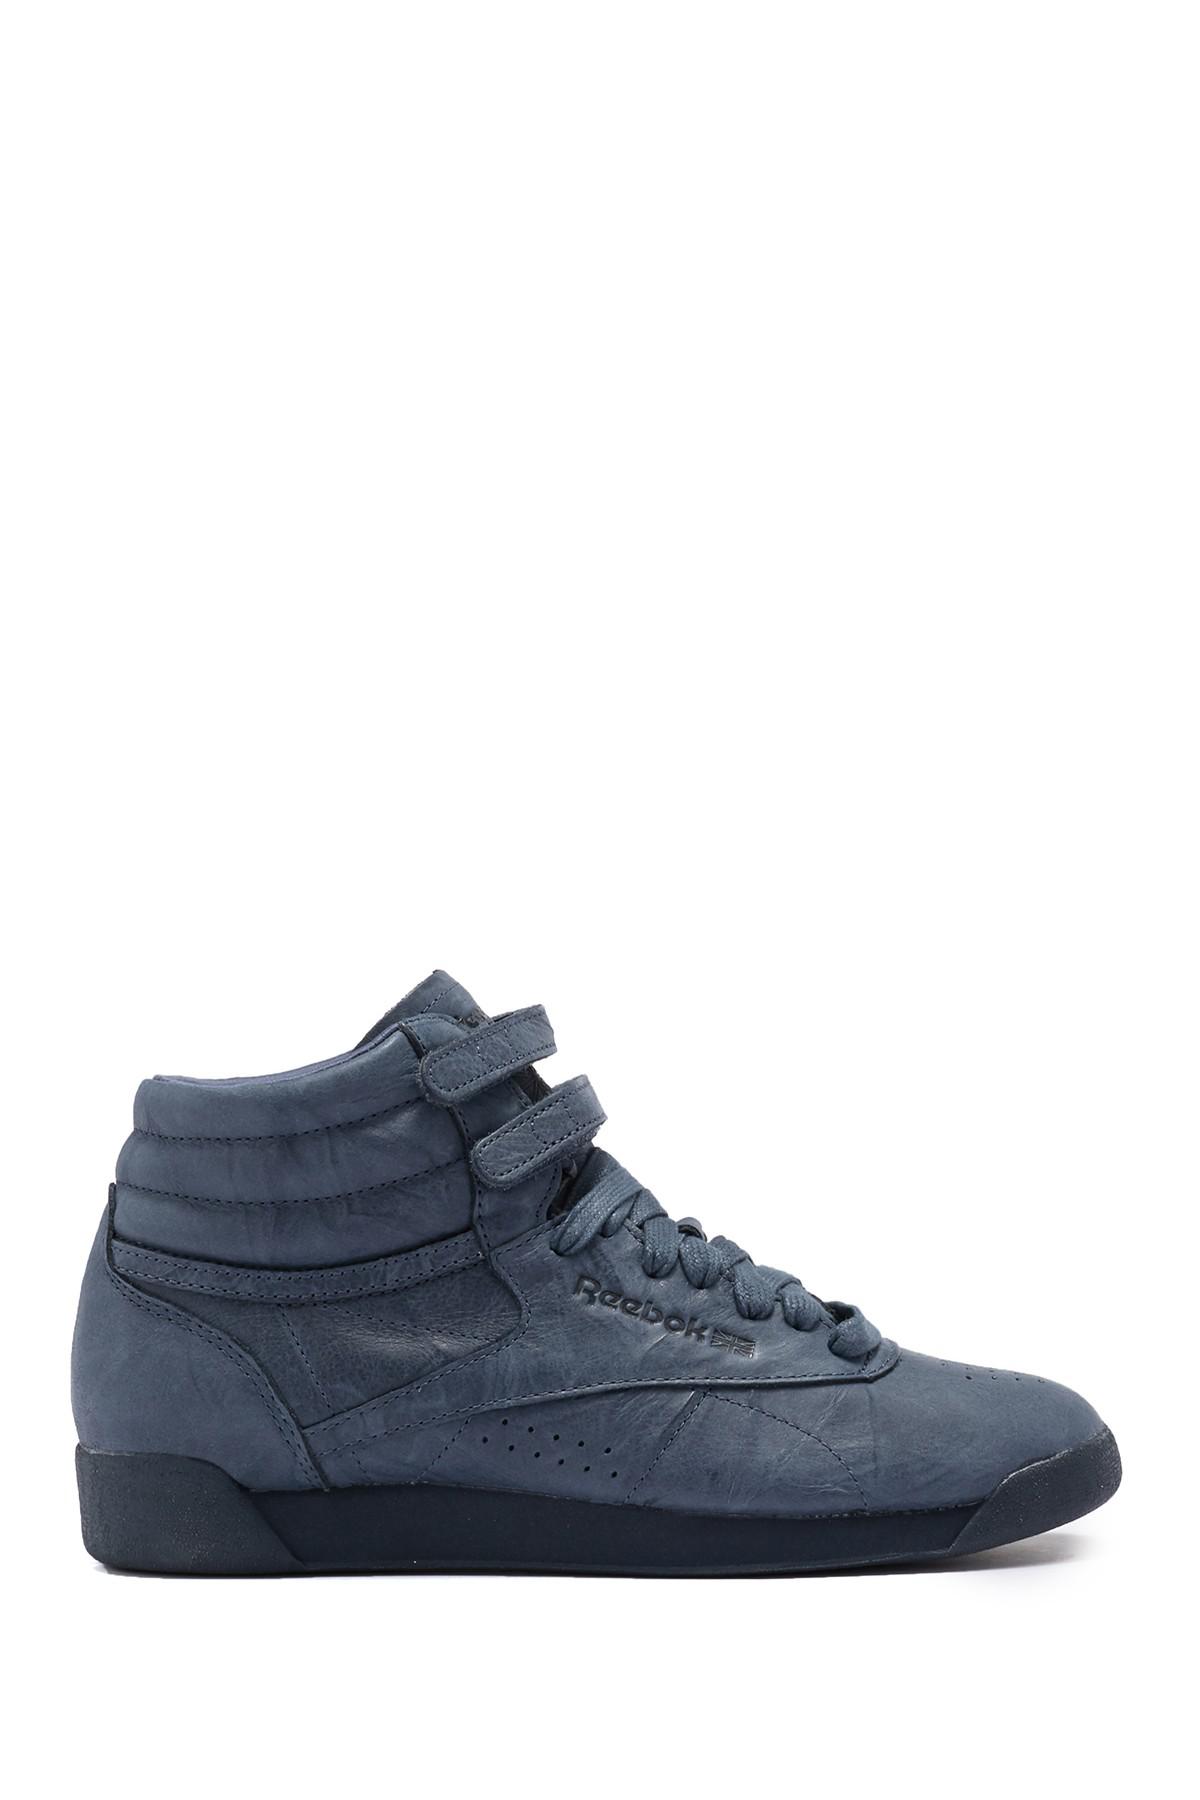 Reebok Leather Freestyle Hi Fbt Sneaker in Blue - Lyst